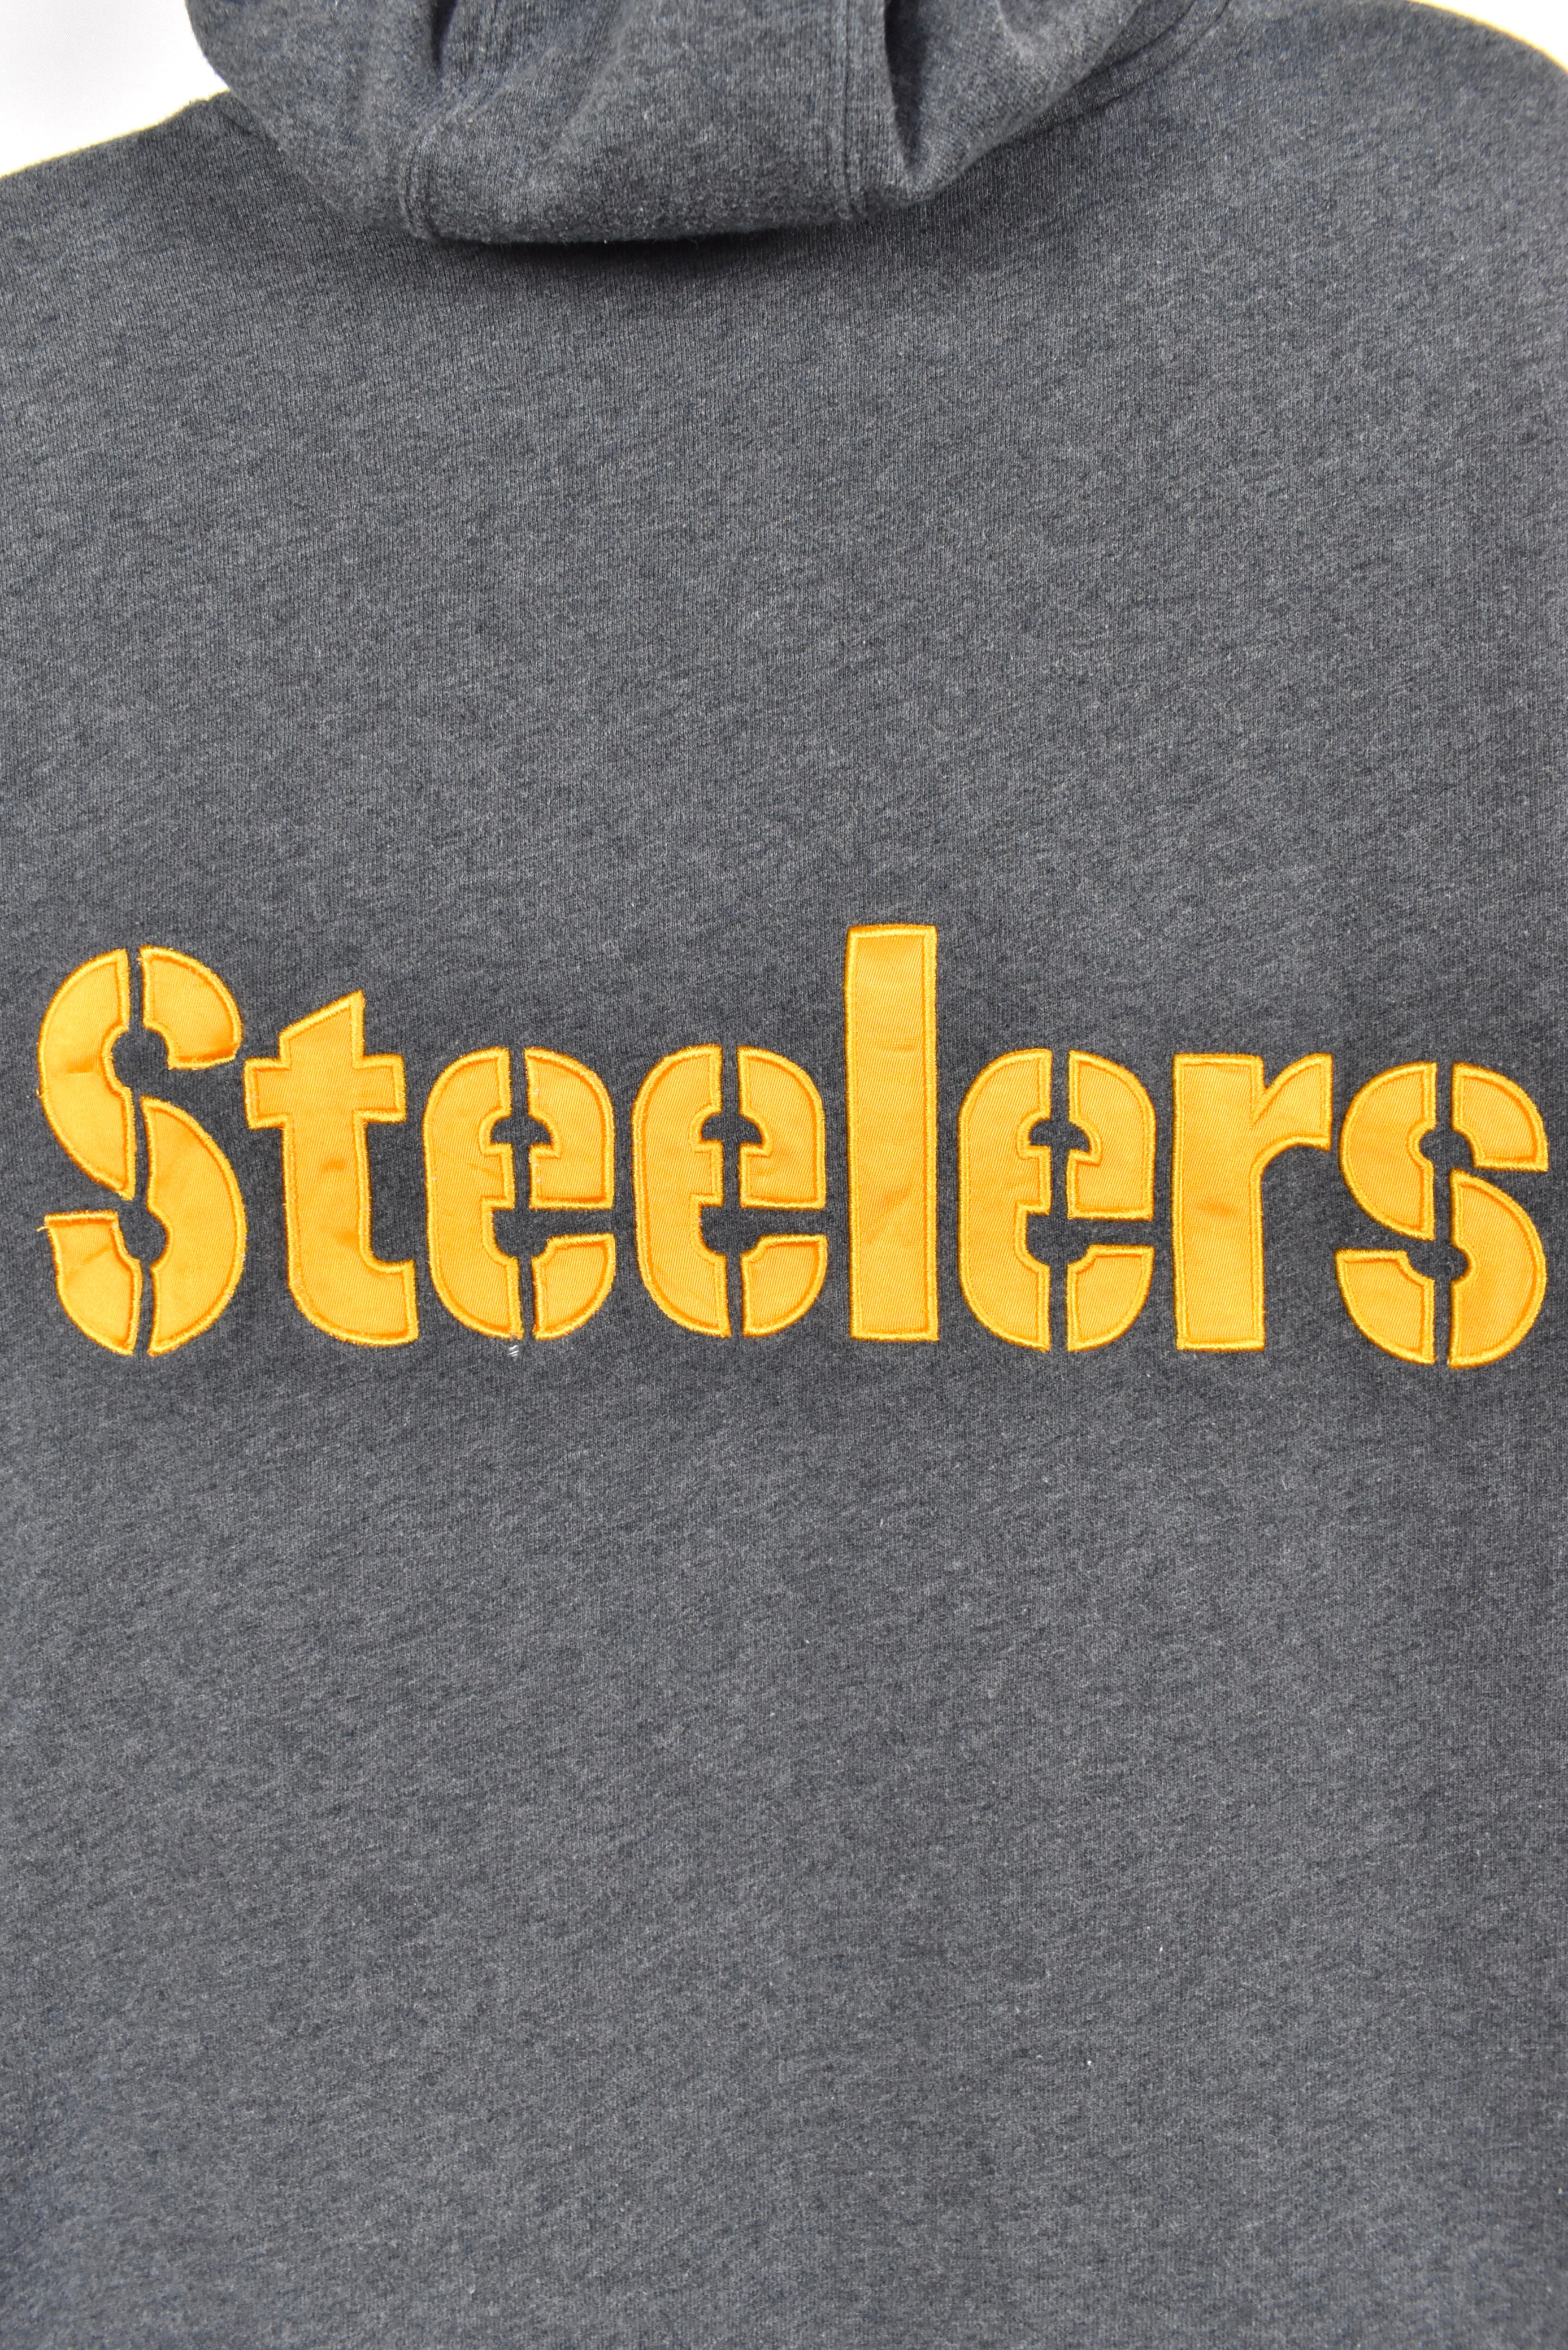 Vintage Pittsburgh Steelers hoodie, NFL grey embroidered heavy sweatshirt - AU XL PRO SPORT